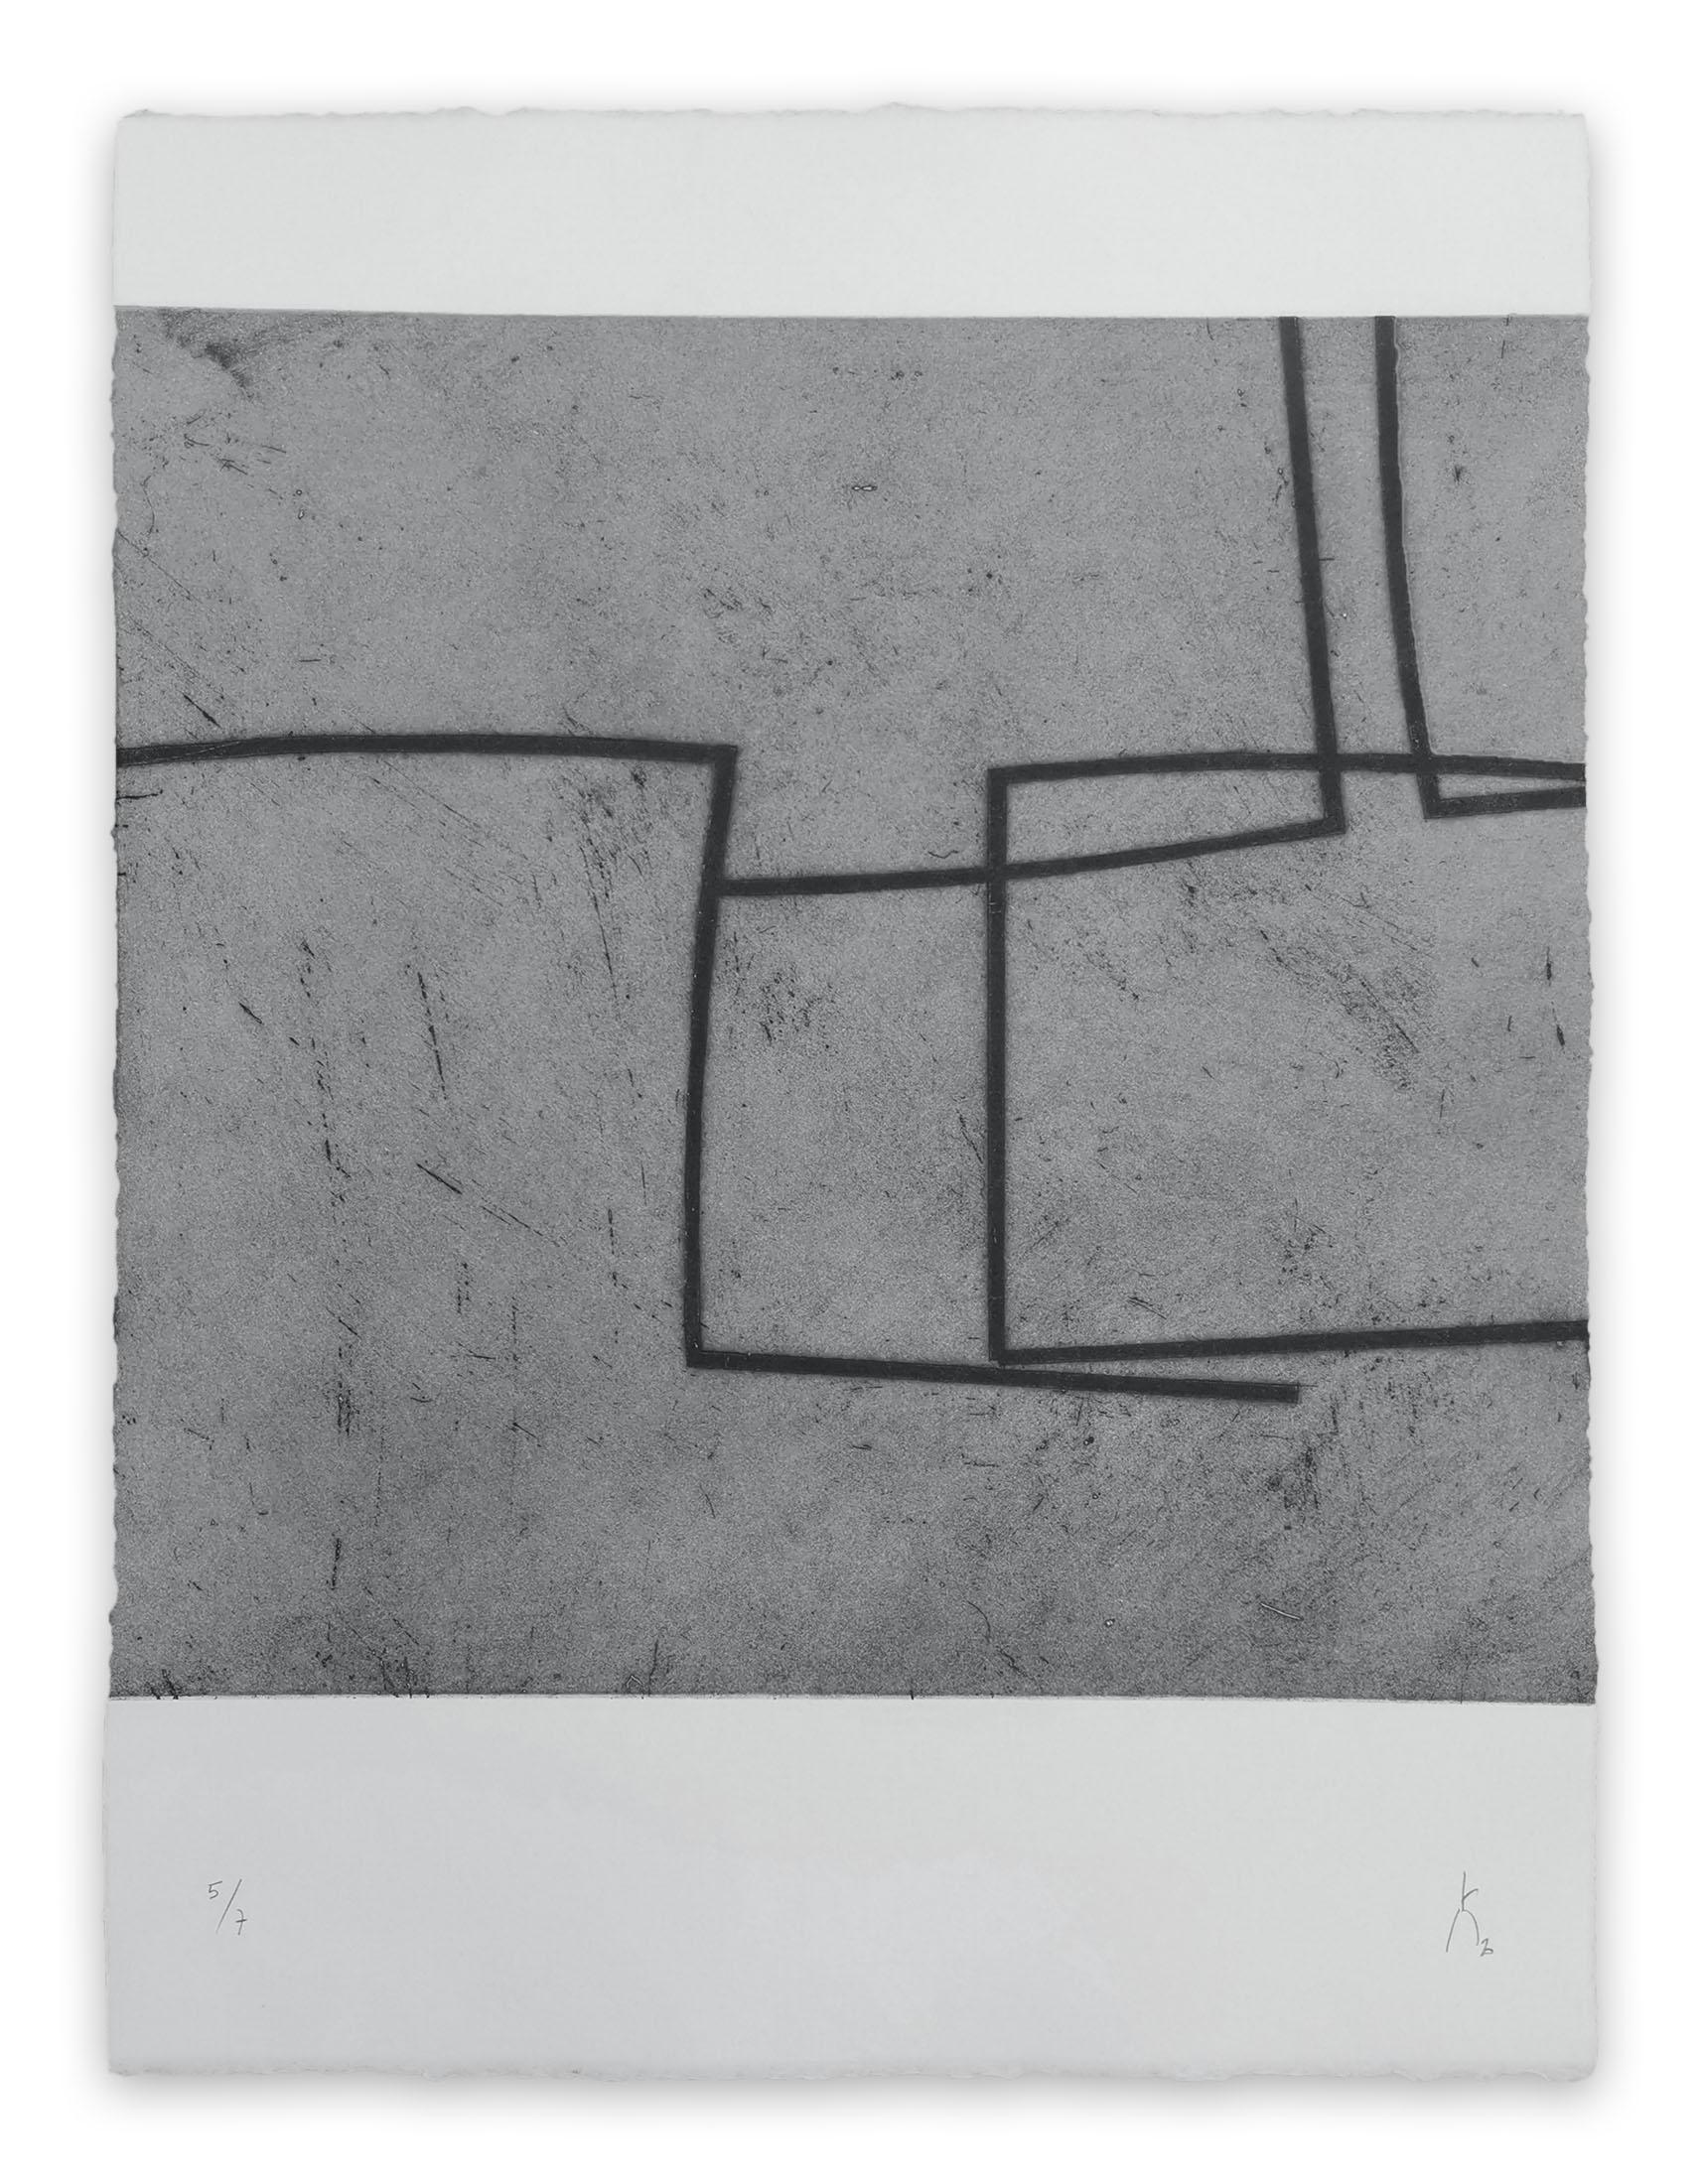 Abstract Print Pierre Muckensturm - 203R0945